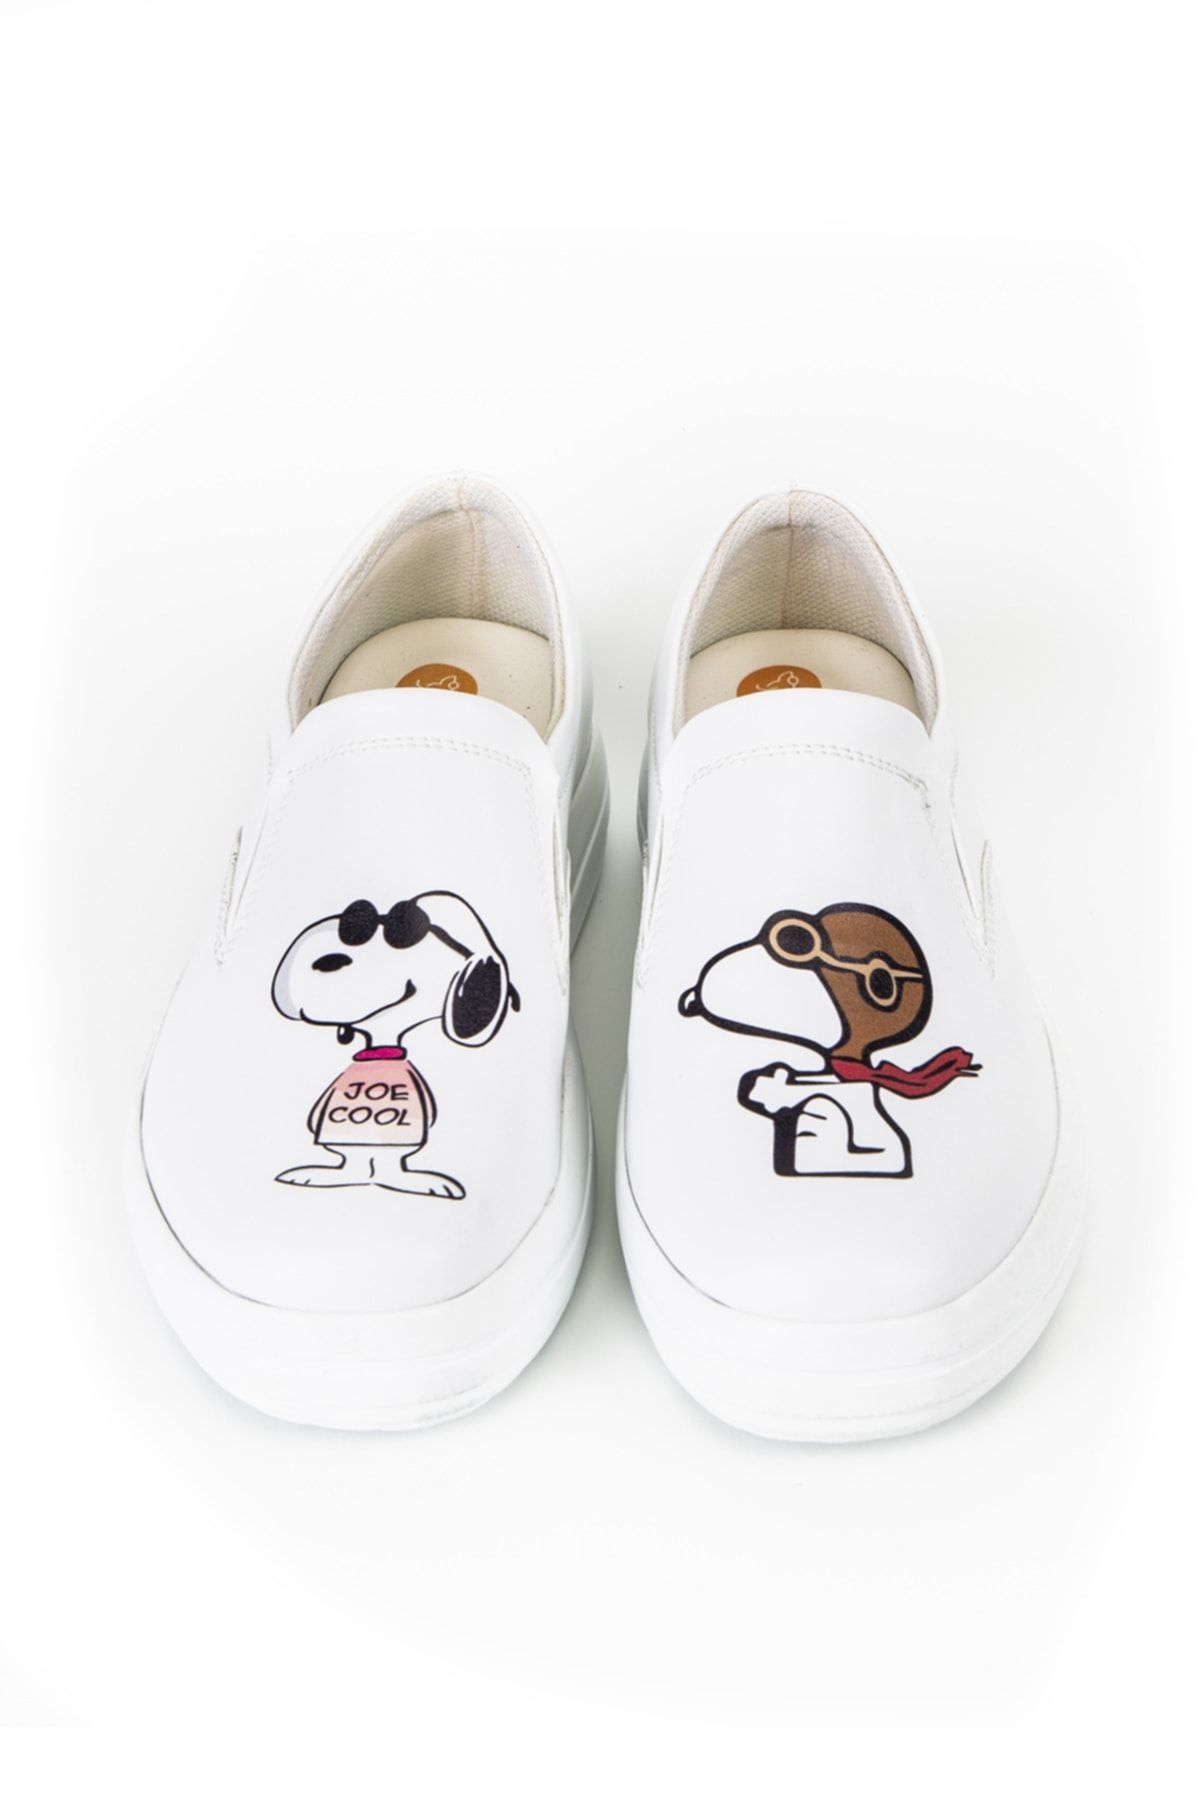 TERLİKSABO Snoopy Klasik Ayakkabı